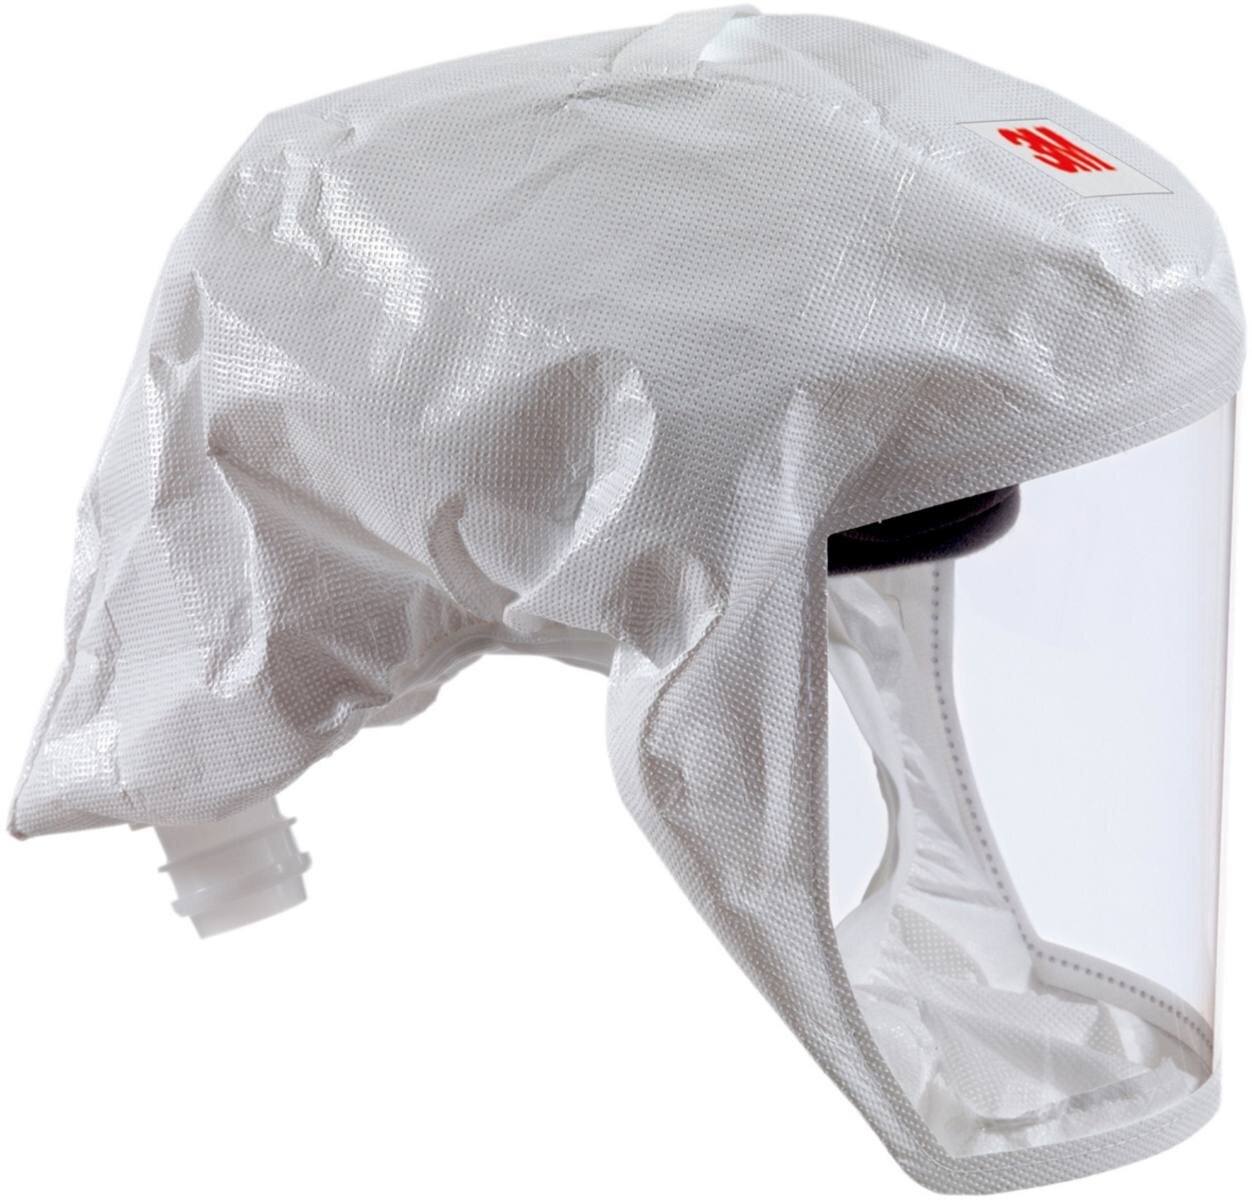 3M Versaflo Gorro ligero desechable S133L, con soporte para la cabeza integrado, blanco, material textil universal, talla M/L Material: Web 24